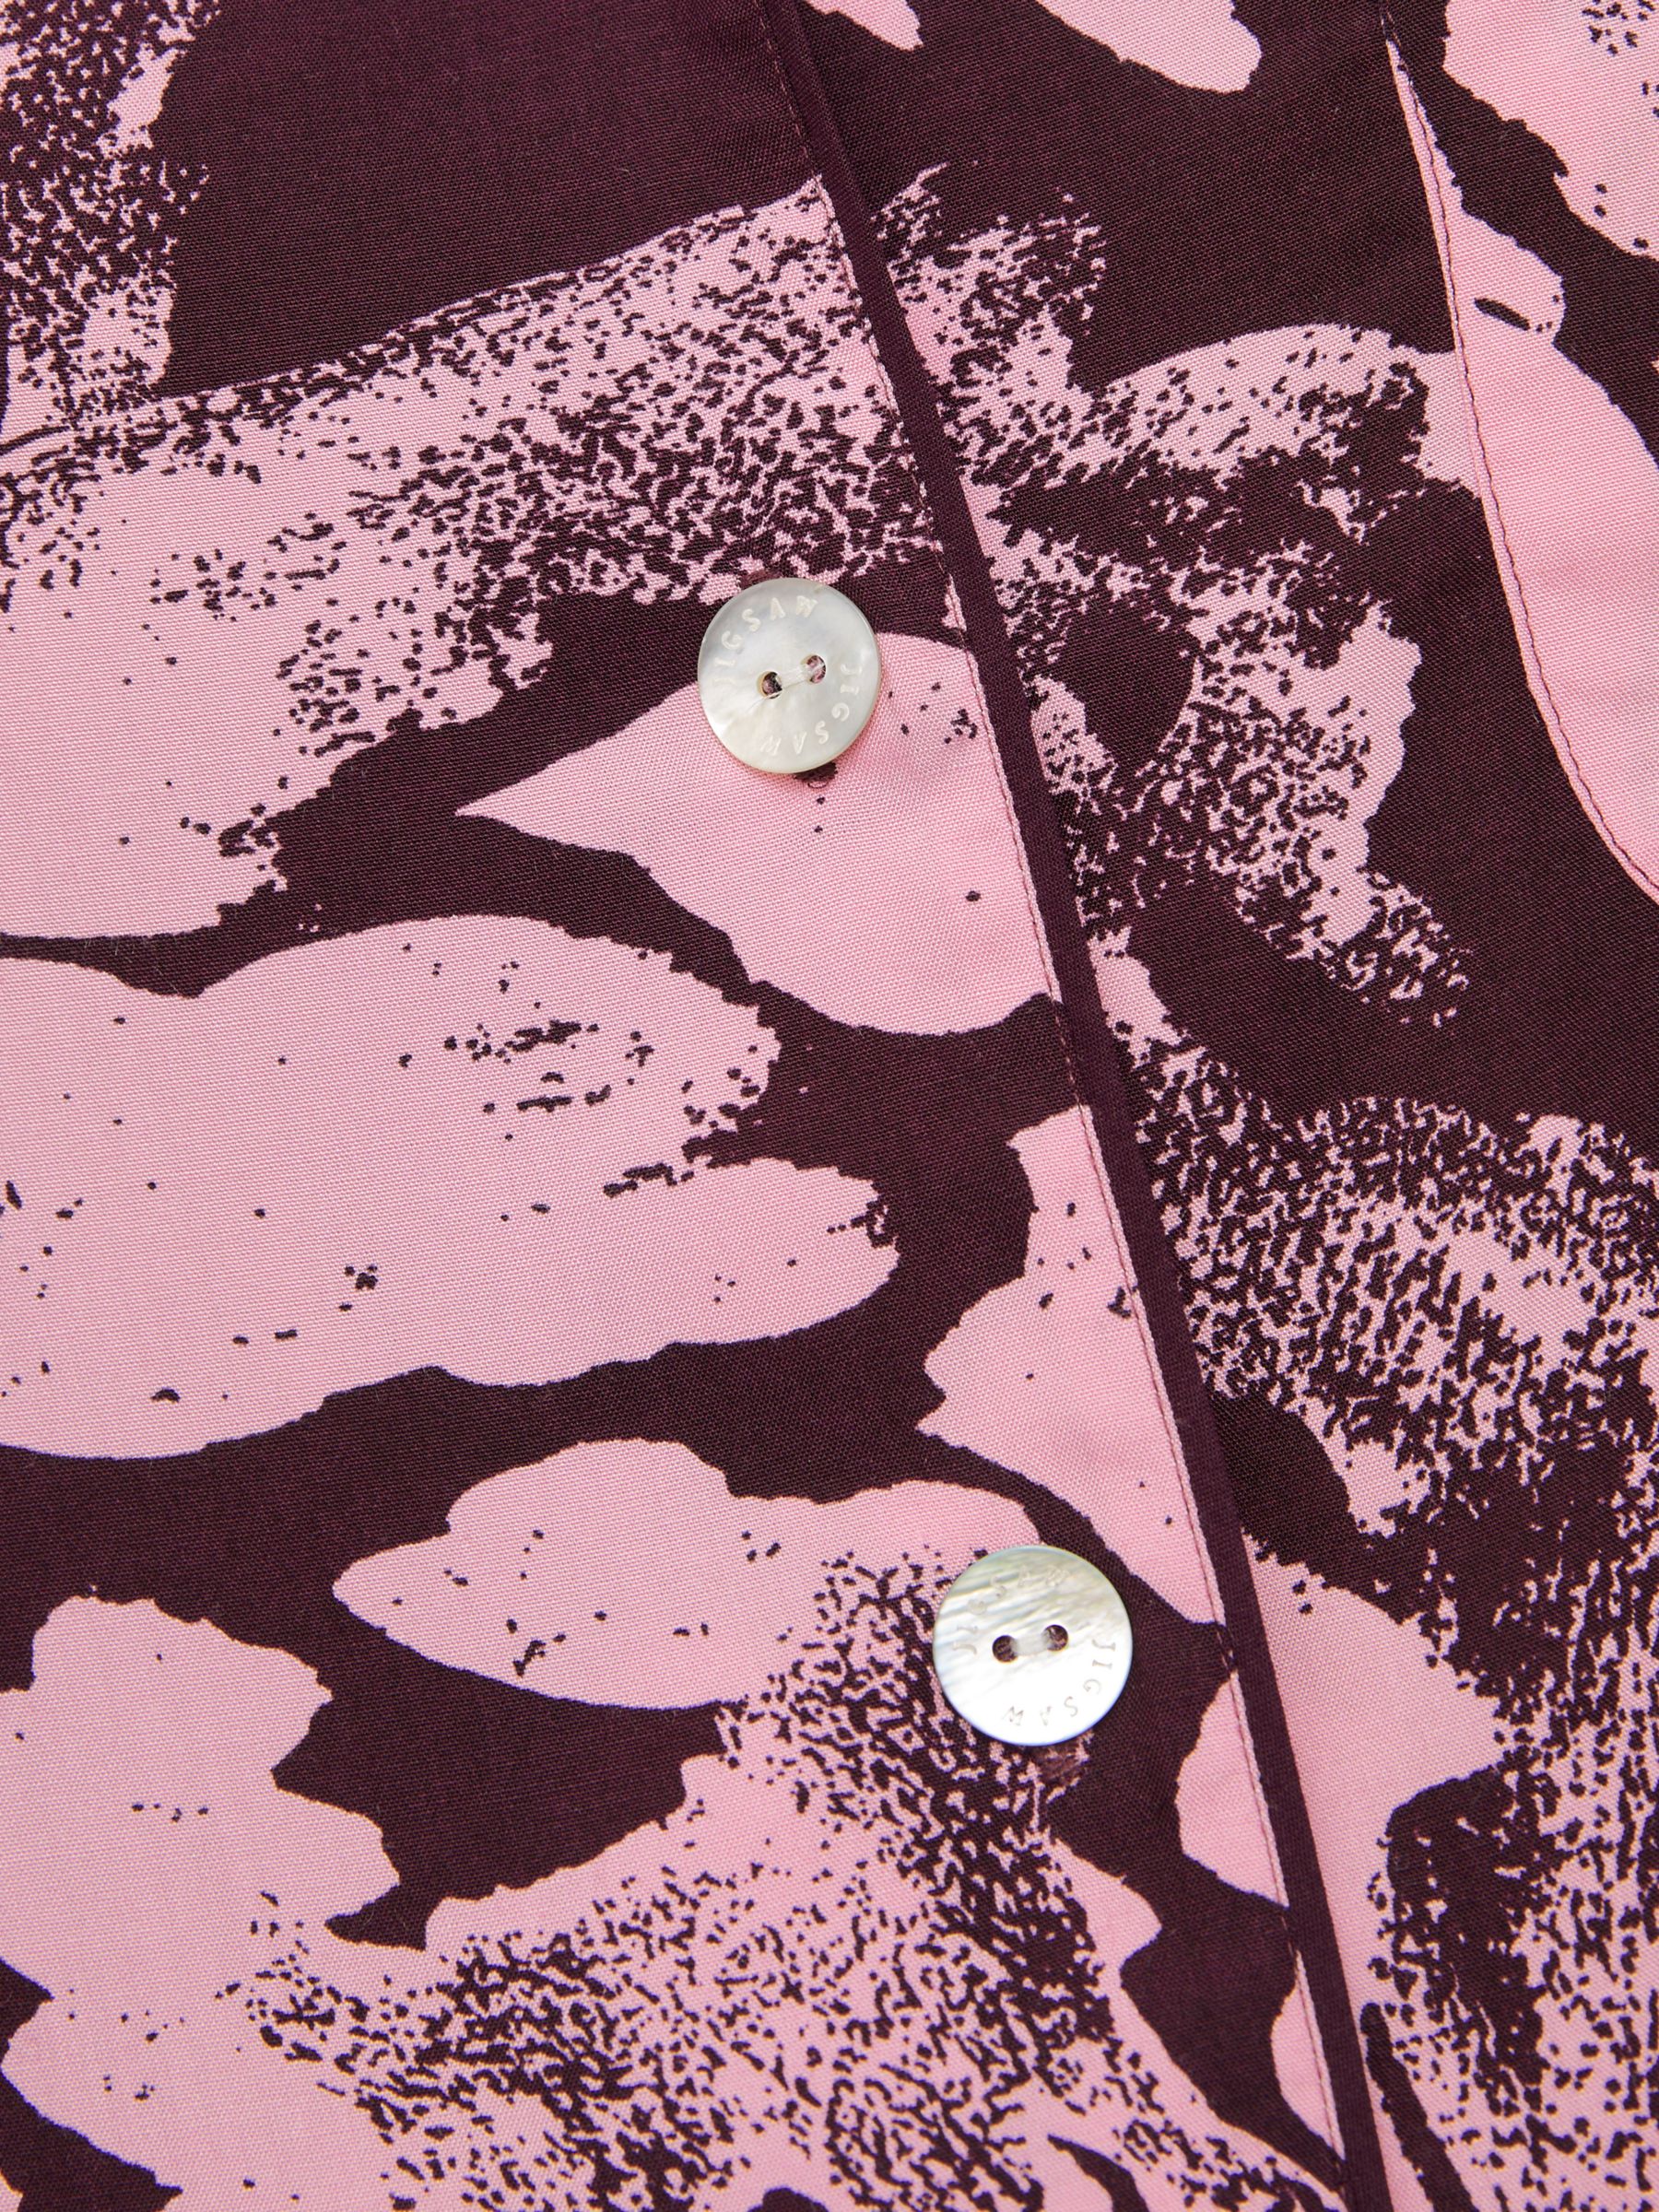 Jigsaw Ink Wave Print Pyjamas, Pink/Burgundy, XS